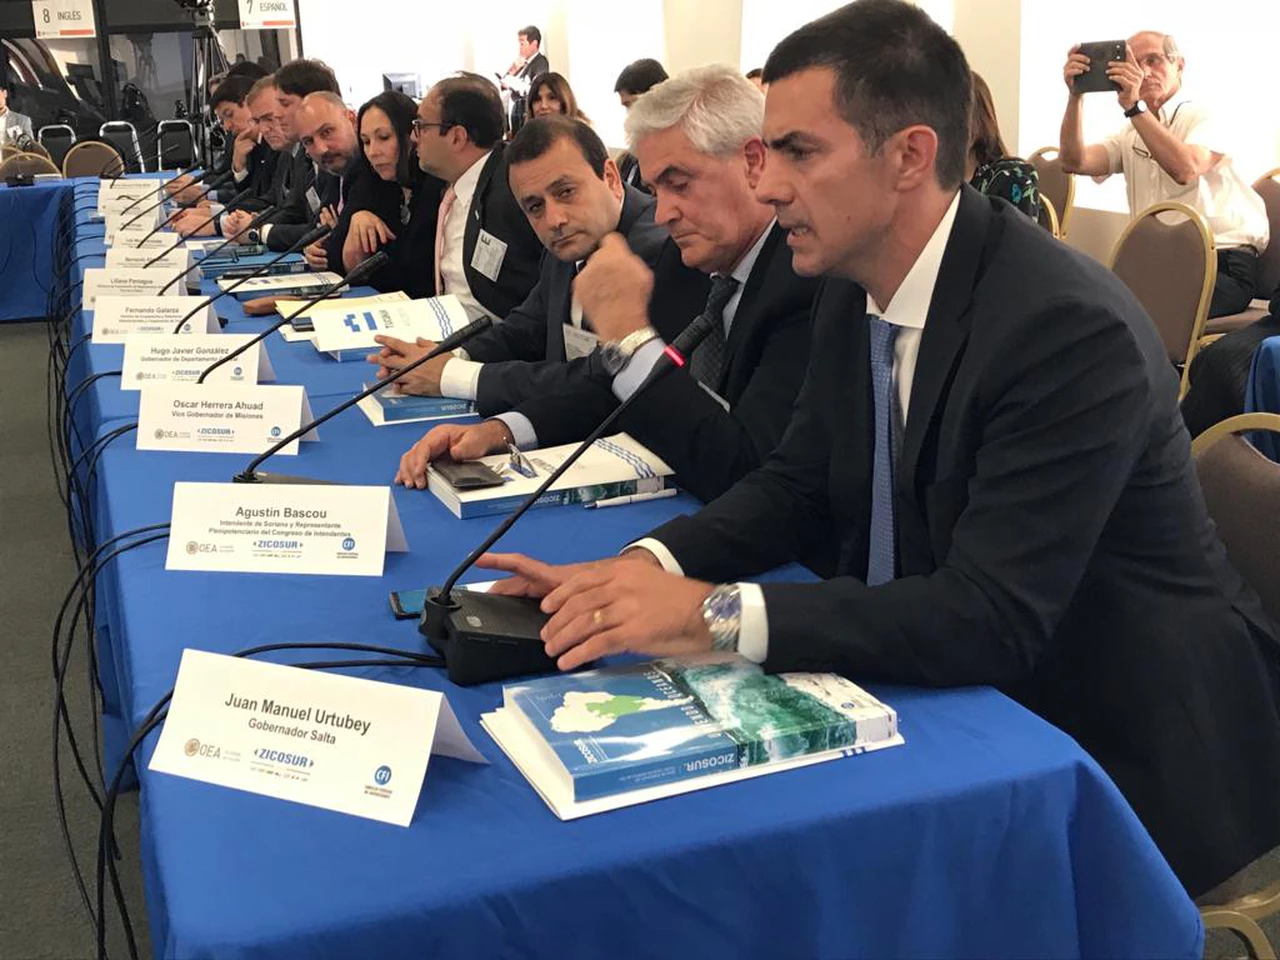 Salta adhirió a la declaración conjunta de la Zicosur y la OEA que fortalecerá la institucionalidad regional